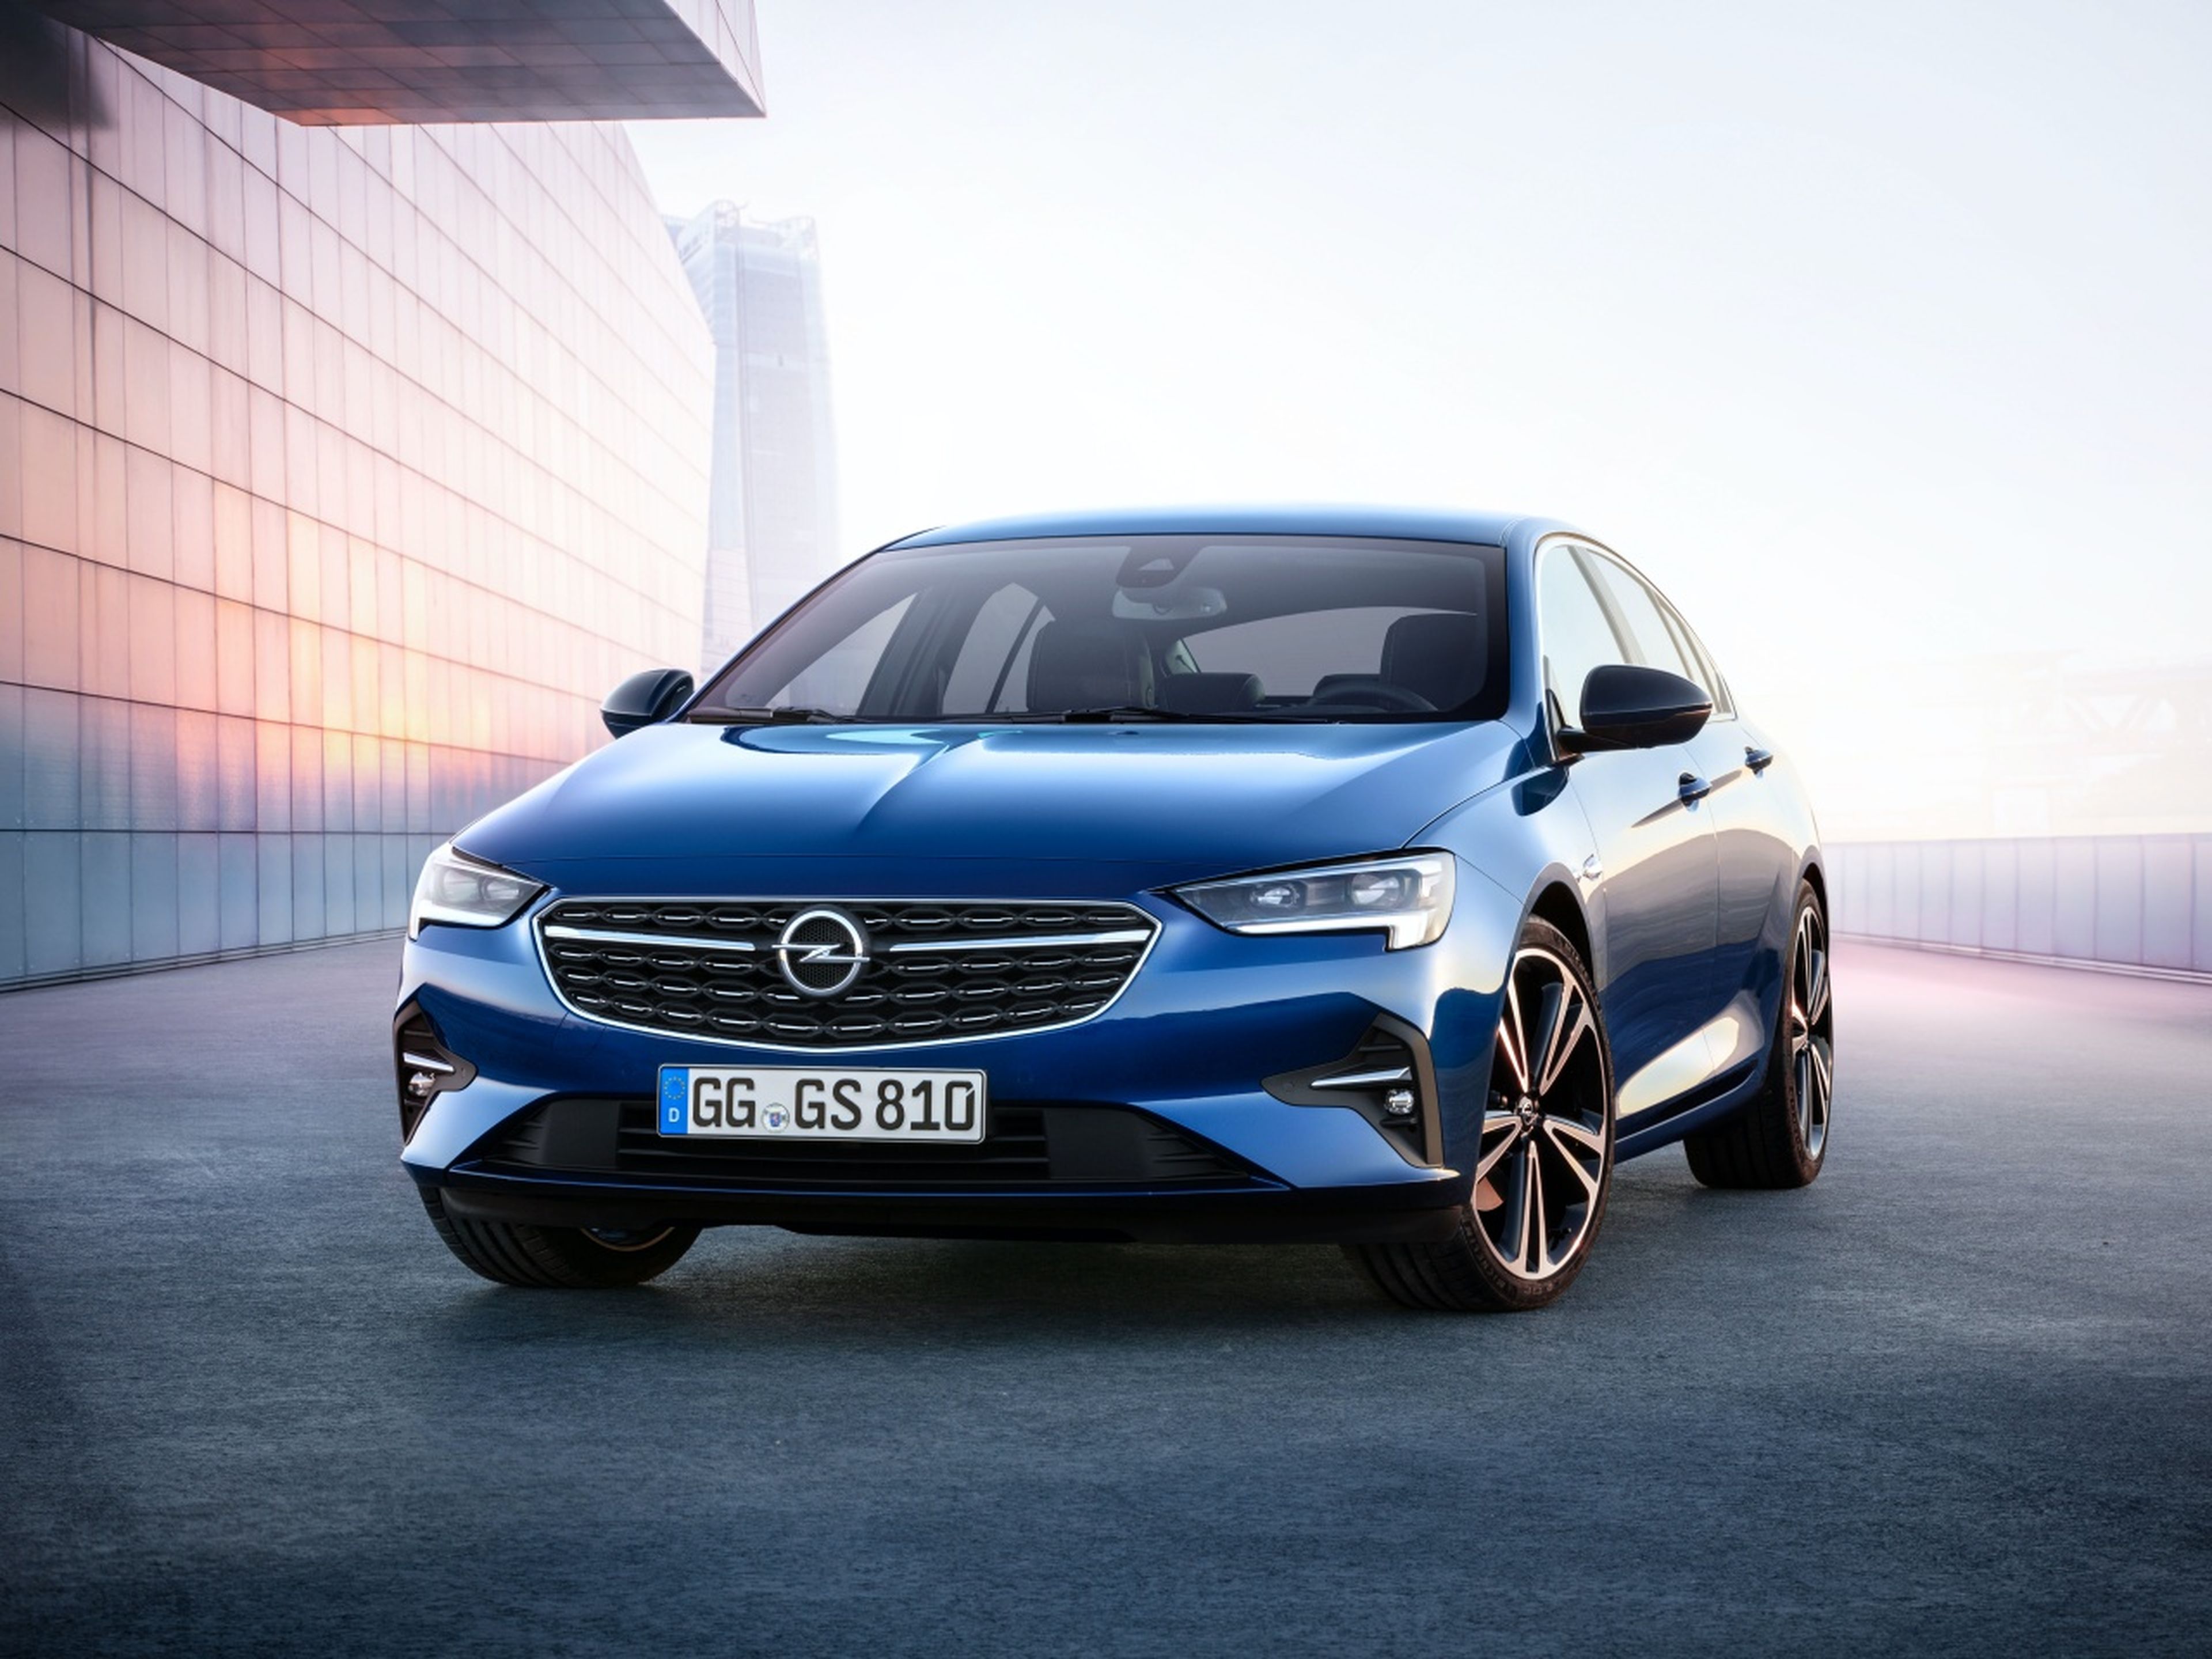 Opel Insignia, todas las versiones y motorizaciones del mercado, con  precios, imágenes, datos técnicos y pruebas.